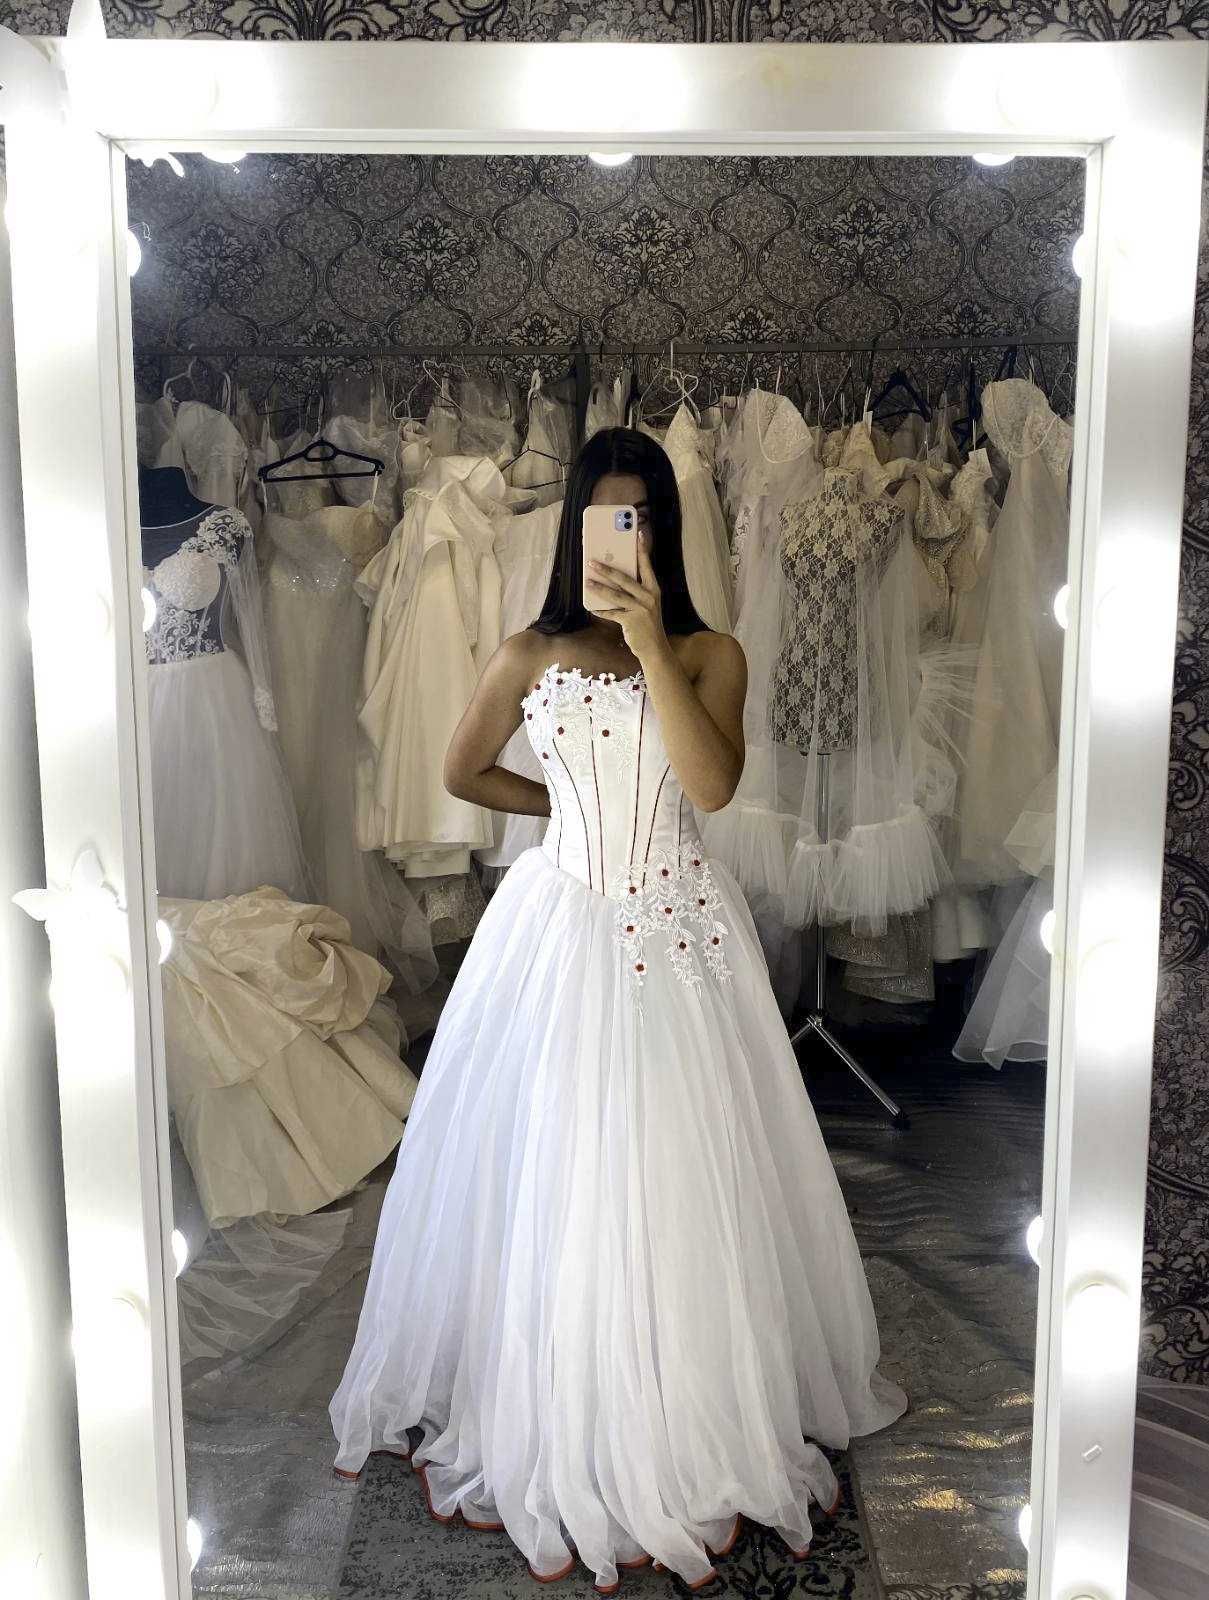 Весільна-випускна сукня-500грн